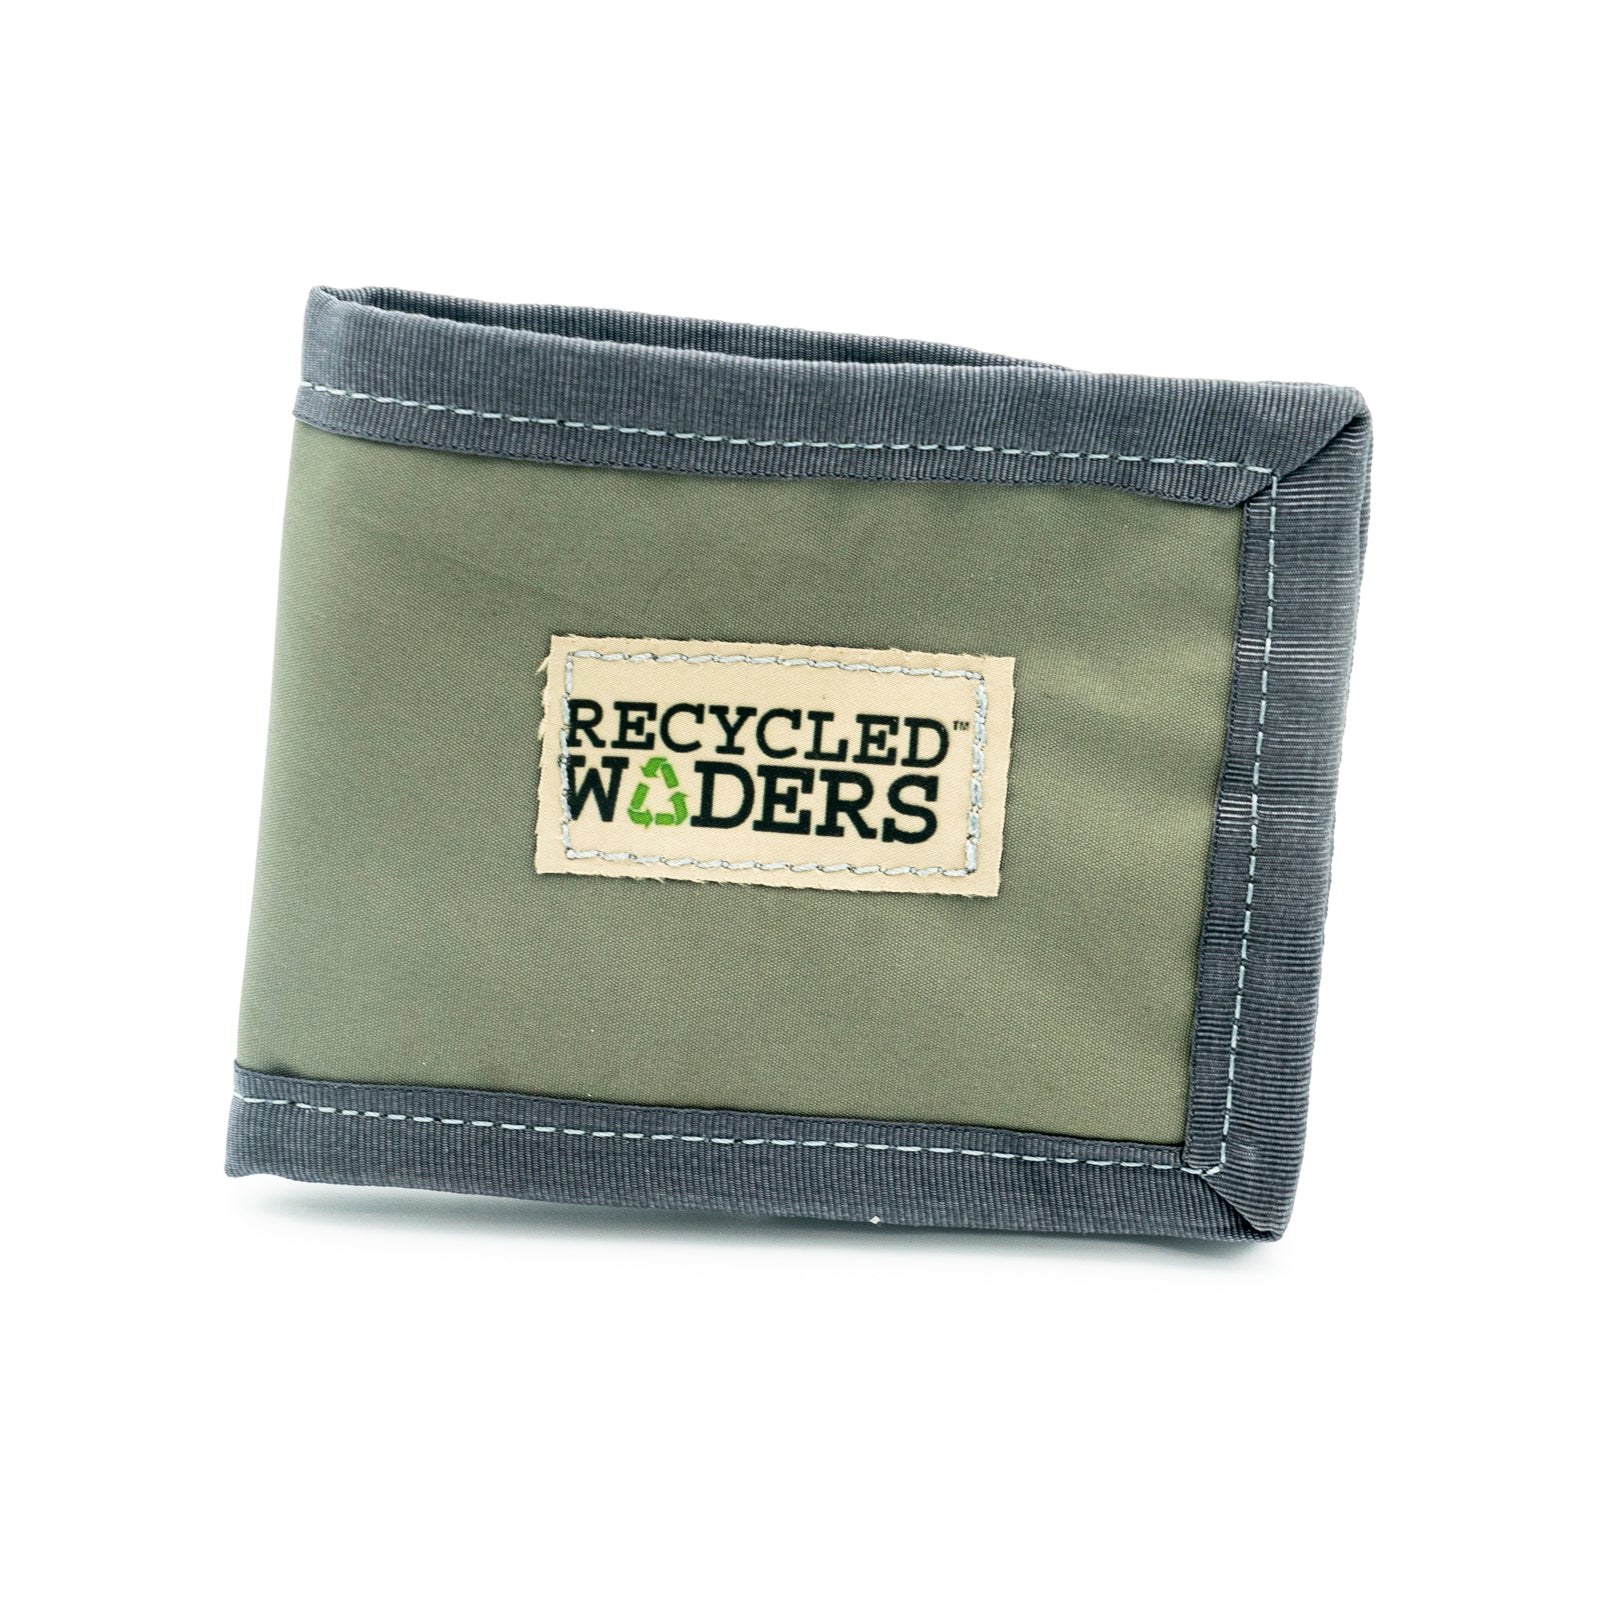 Recycled Waders Skinny Wallet